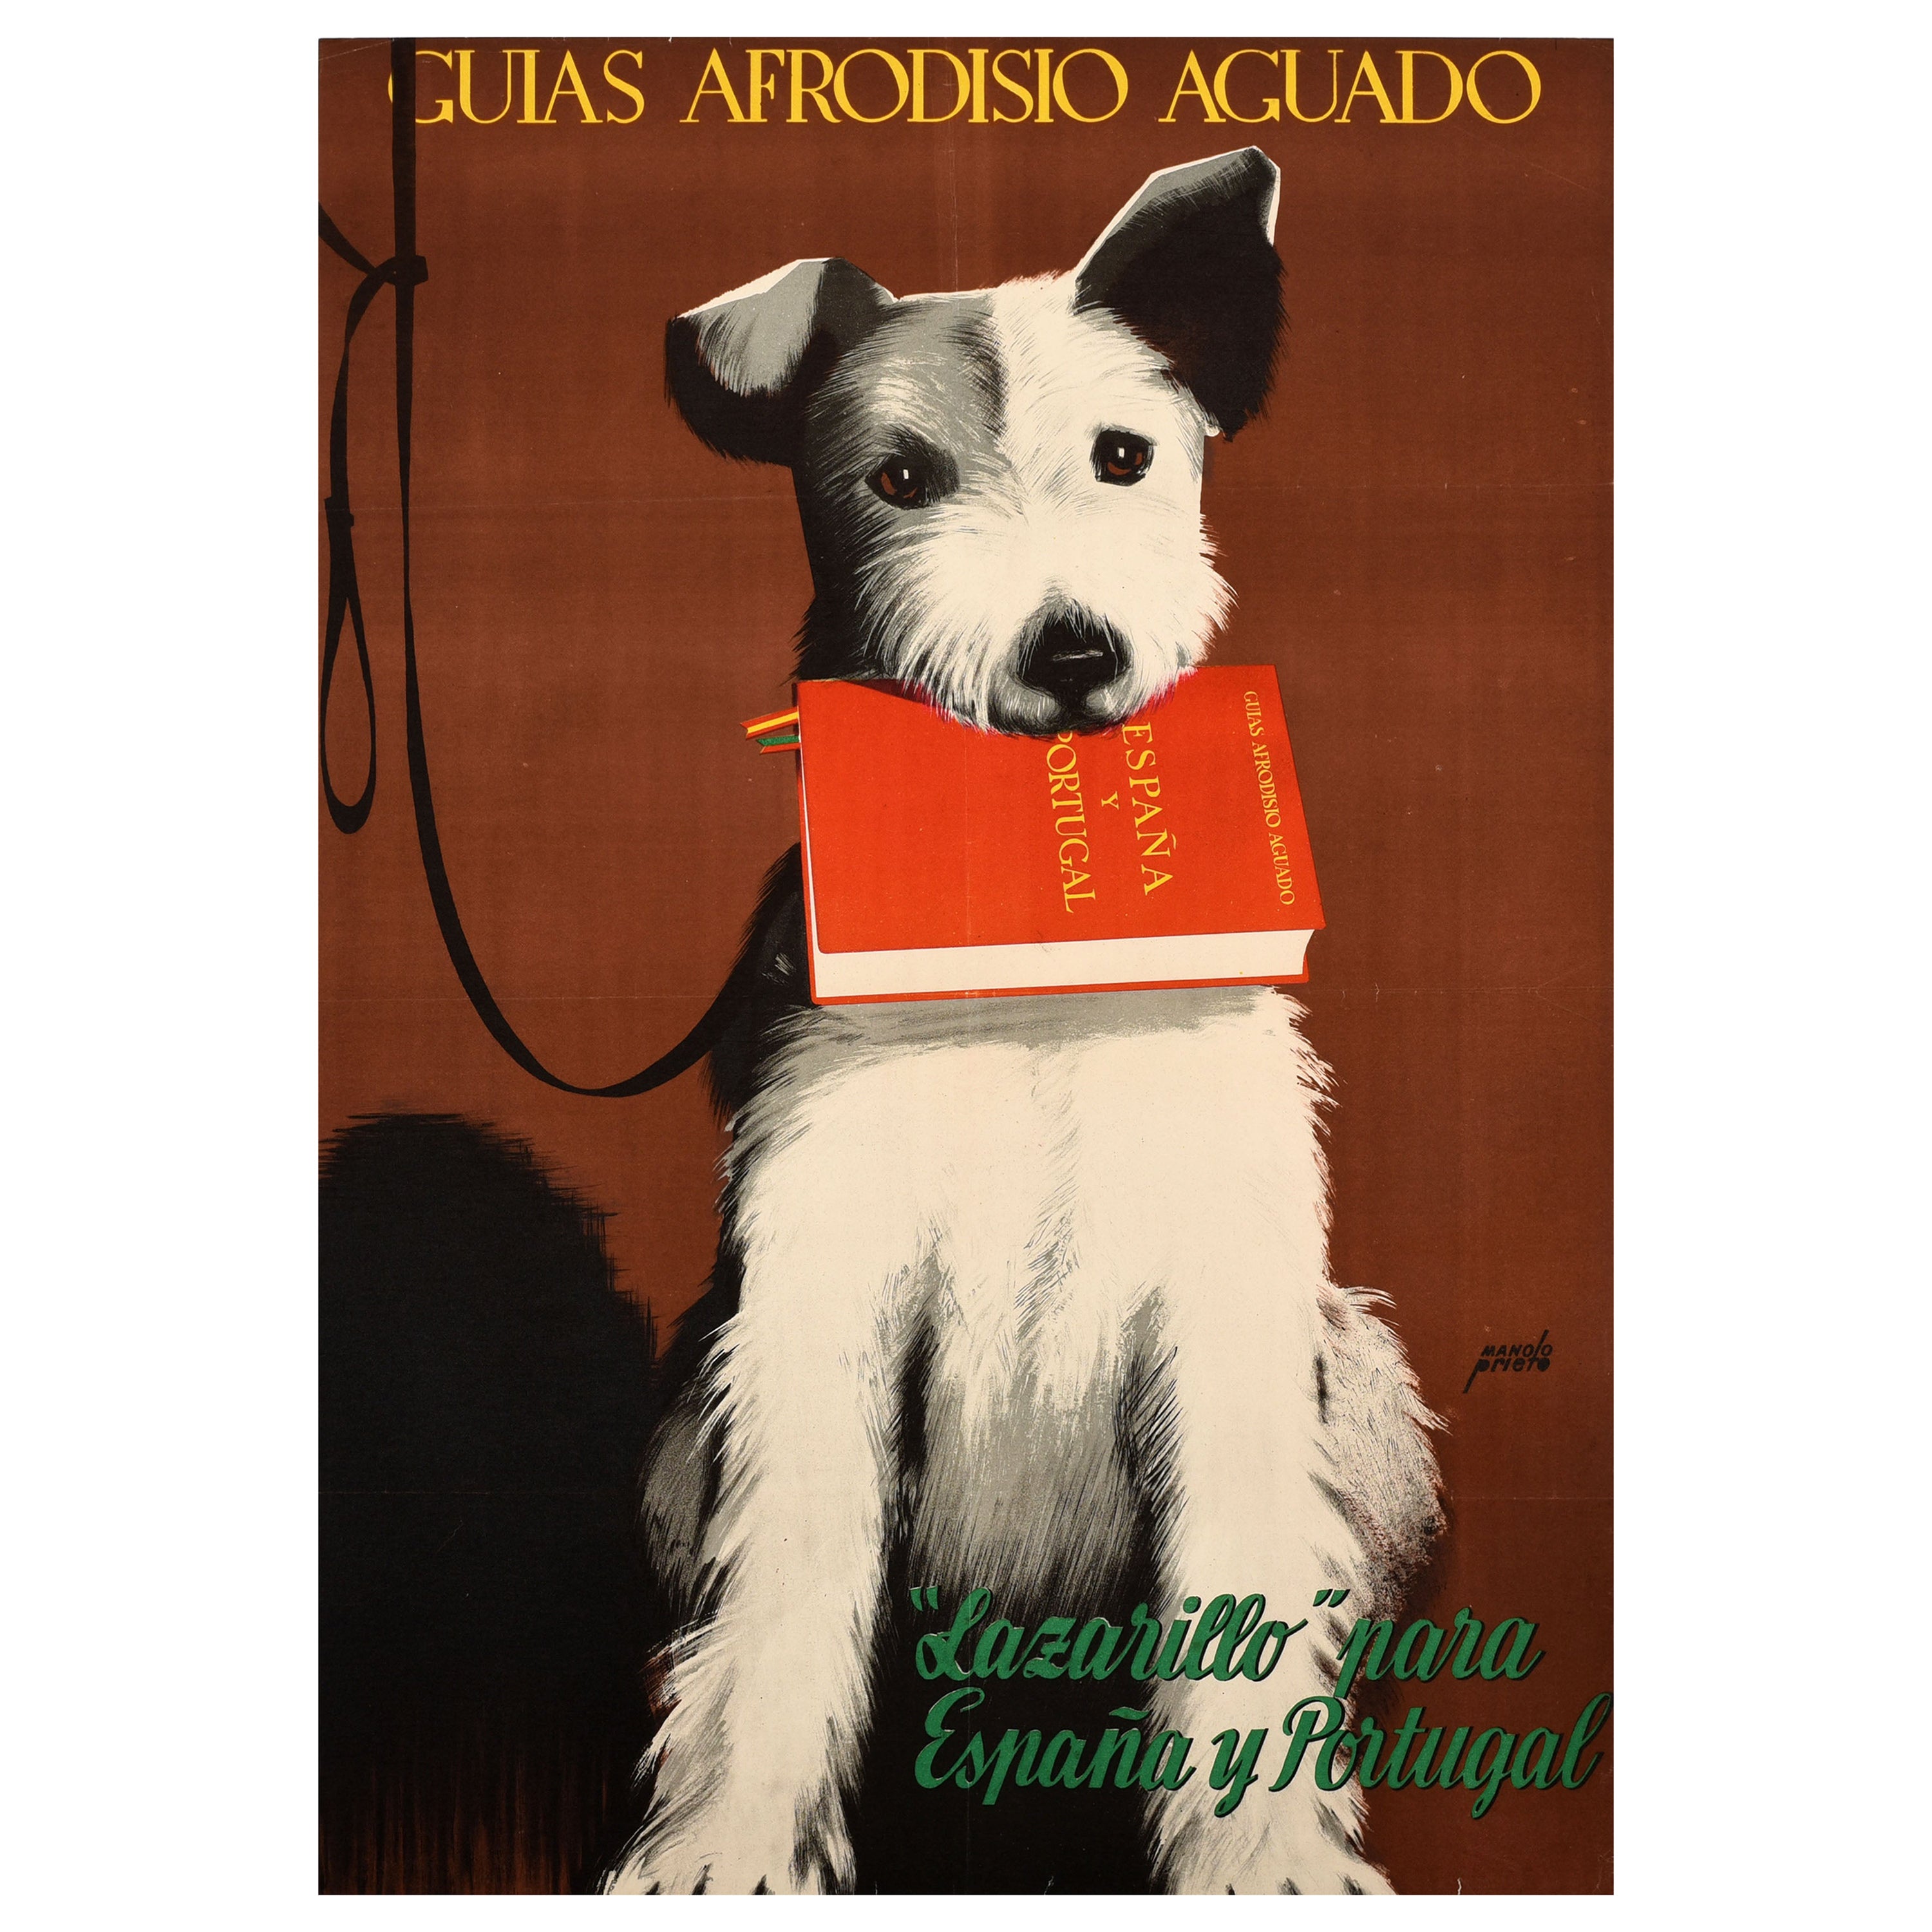 Original-Vintage-Werbeplakat Spanien Portugal, Reiseführer, Buch, Terrier, Hund